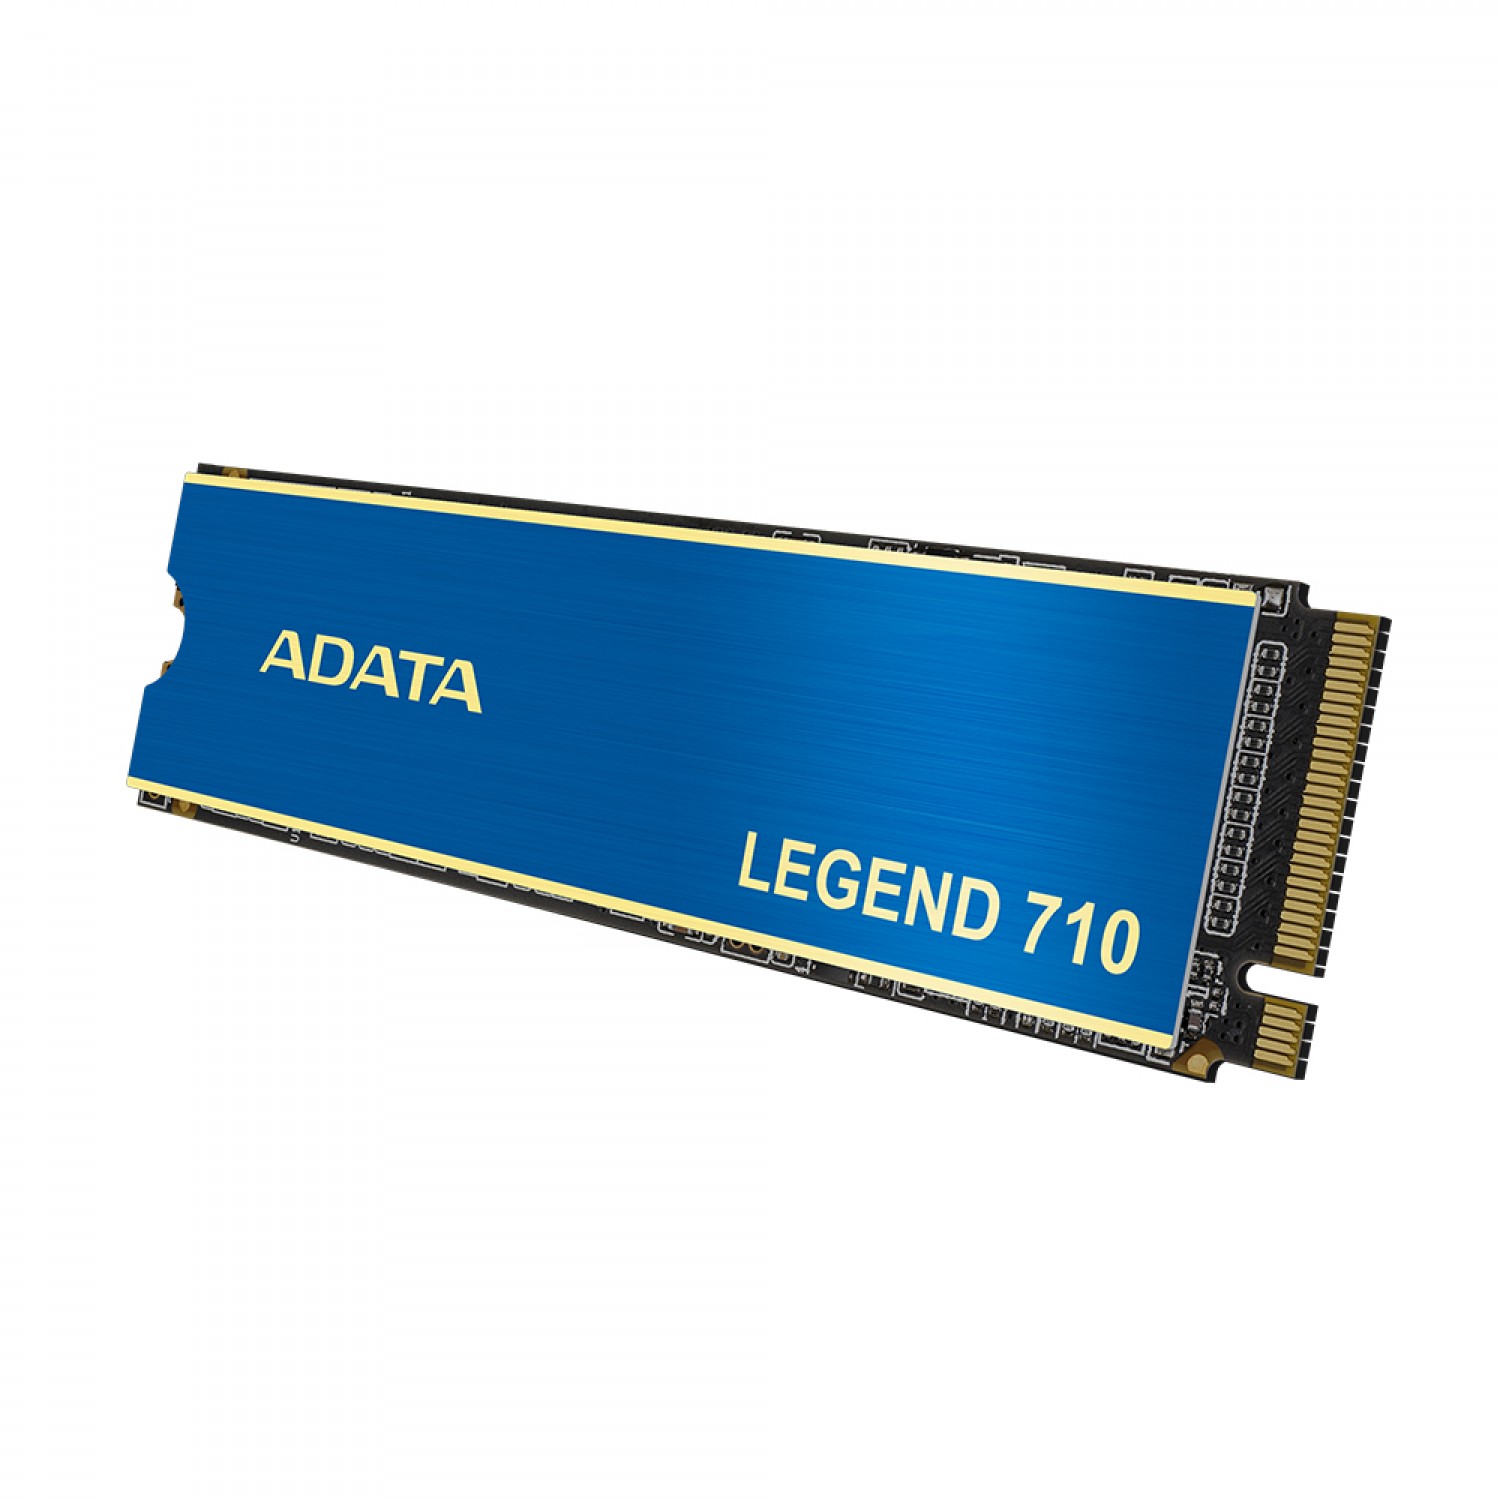 حافظه اس اس دی ADATA Legend 710 1TB-4